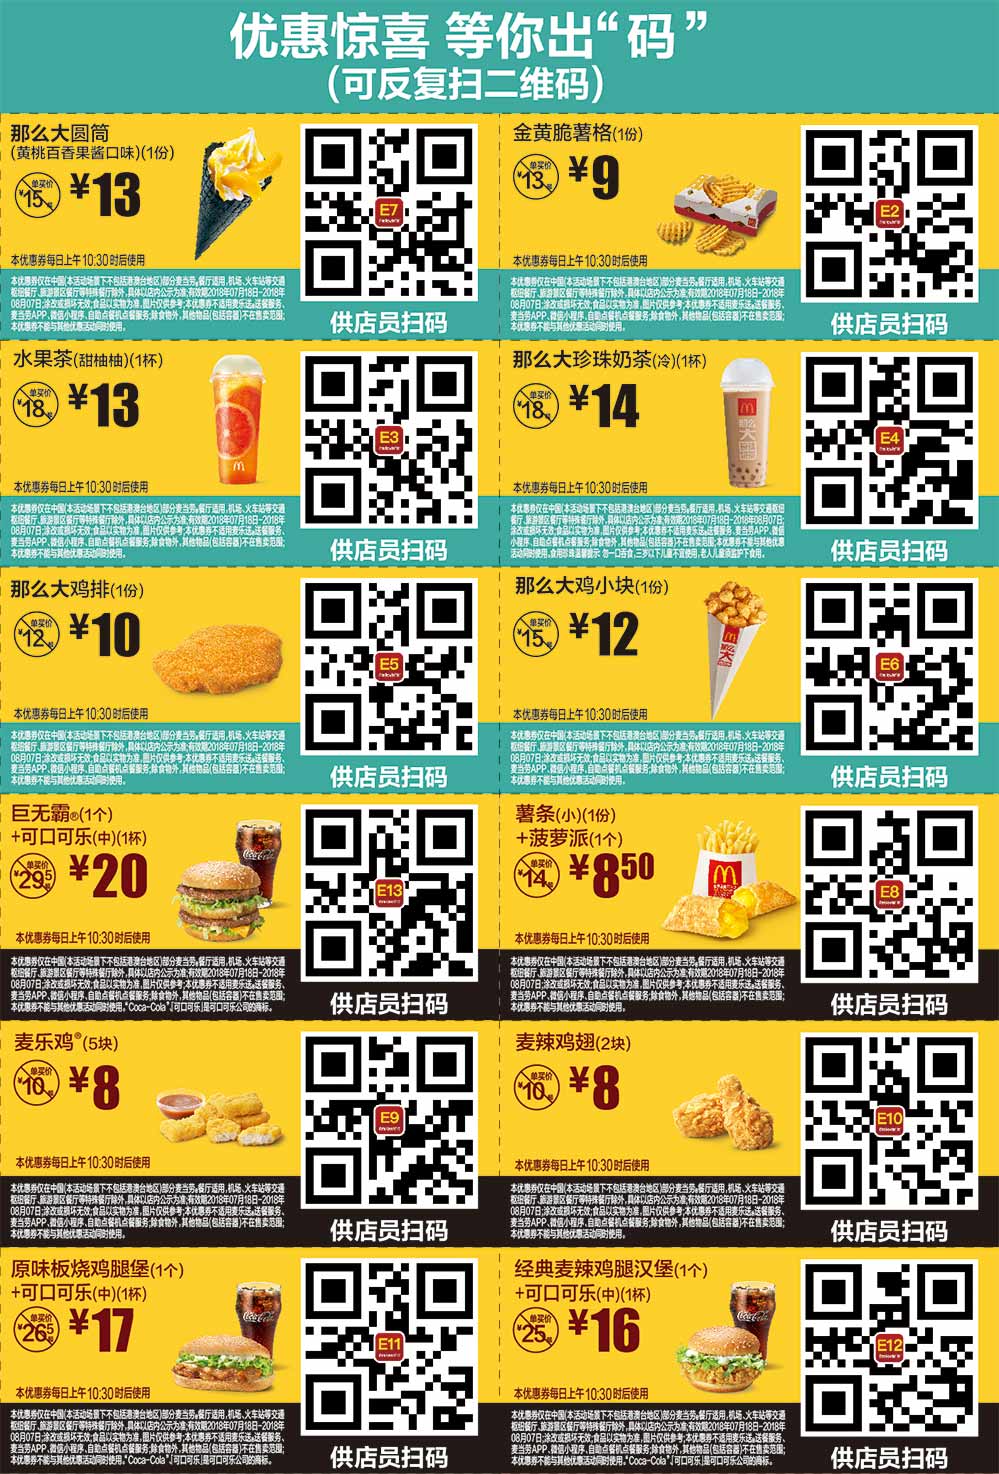 2018年7月8月麦当劳优惠券手机版整张版本，点餐出示给店员扫码享优惠价